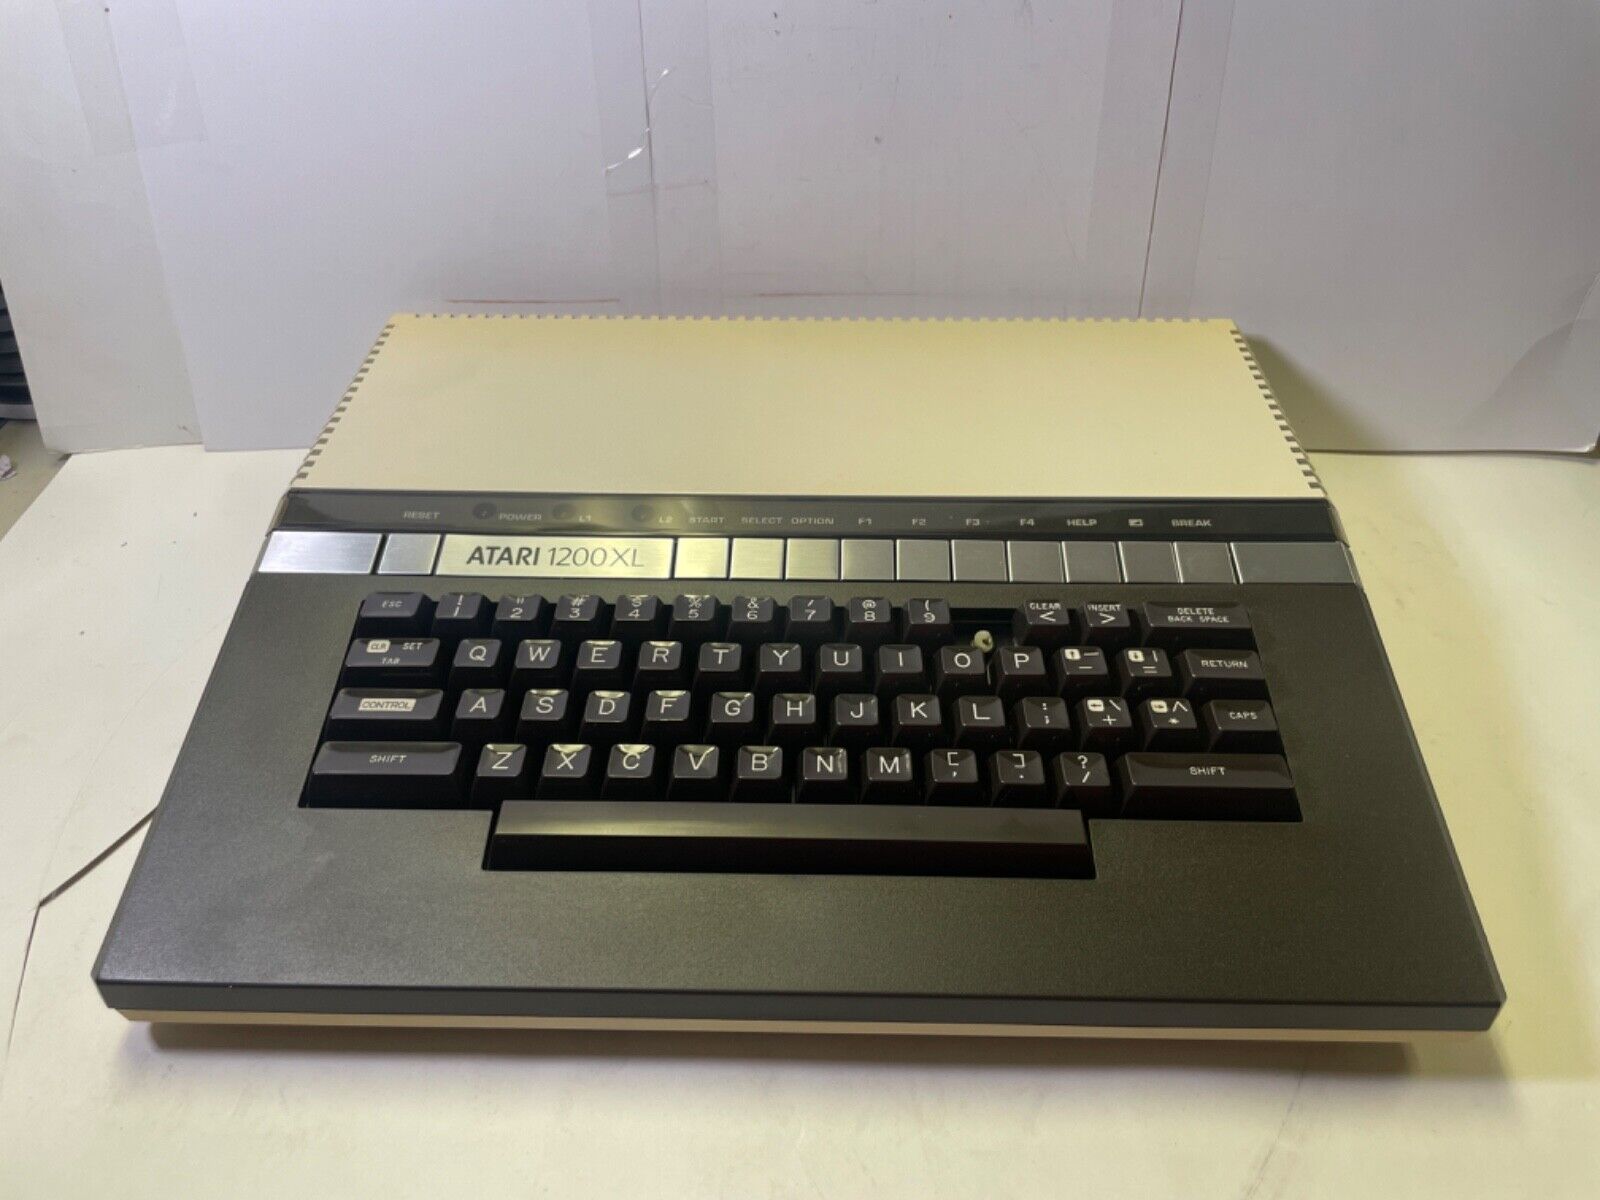 Vintage Atari 1200XL console - broken key “0”